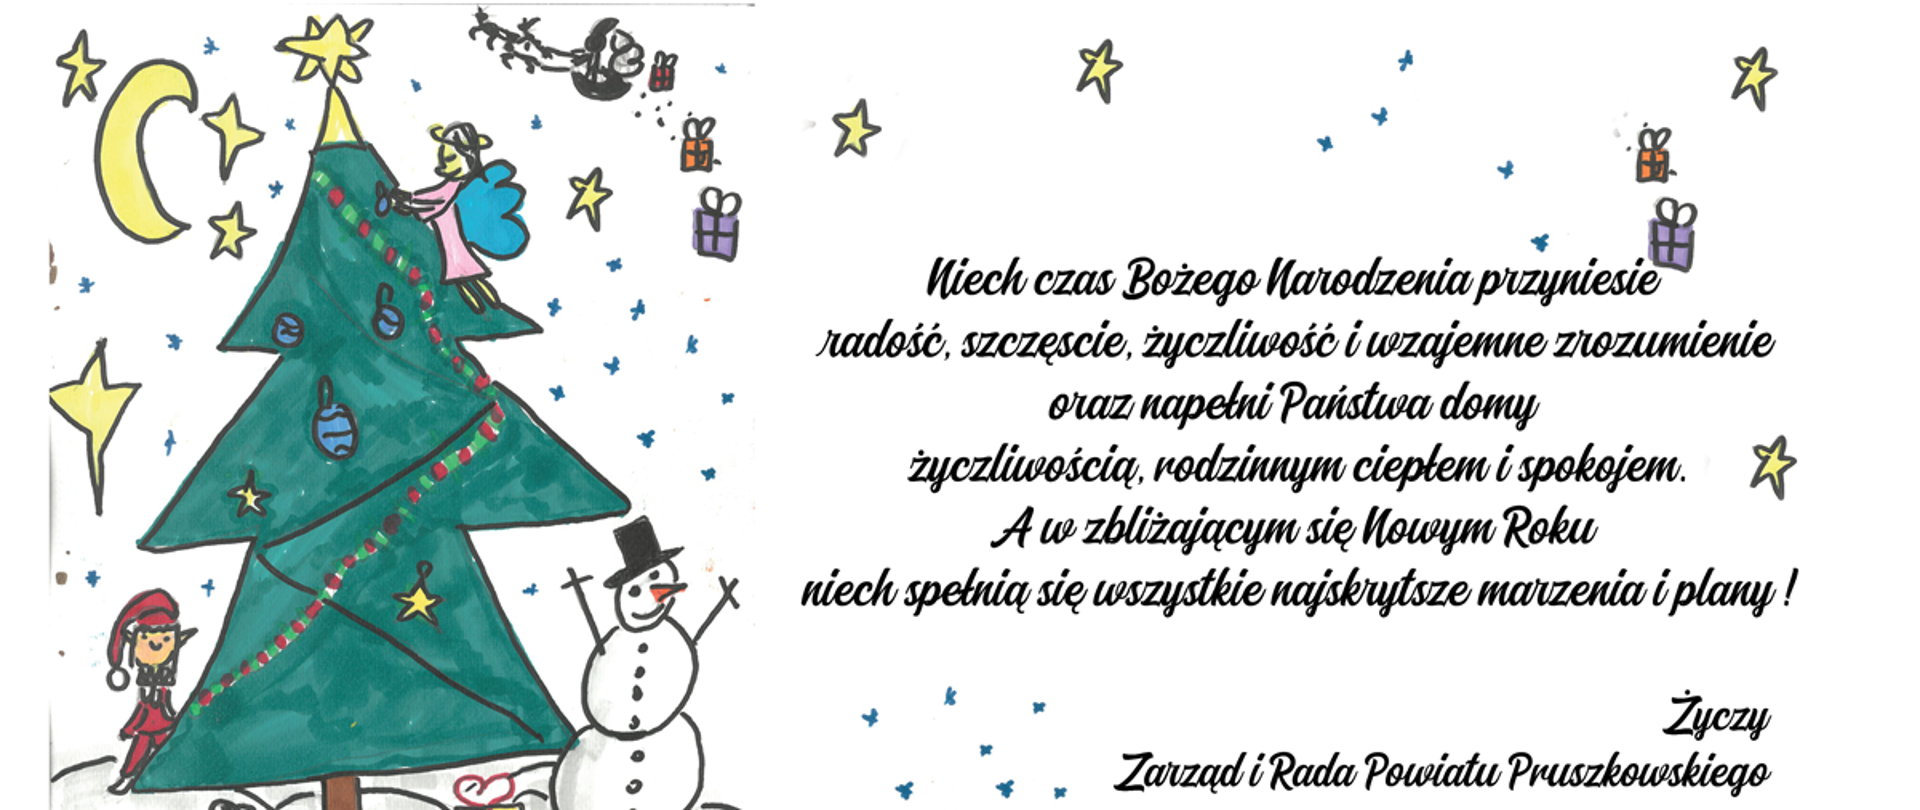 Życzenia Bożonarodzeniowe od Zarządu i Rady Powiatu Pruszkowskiego 